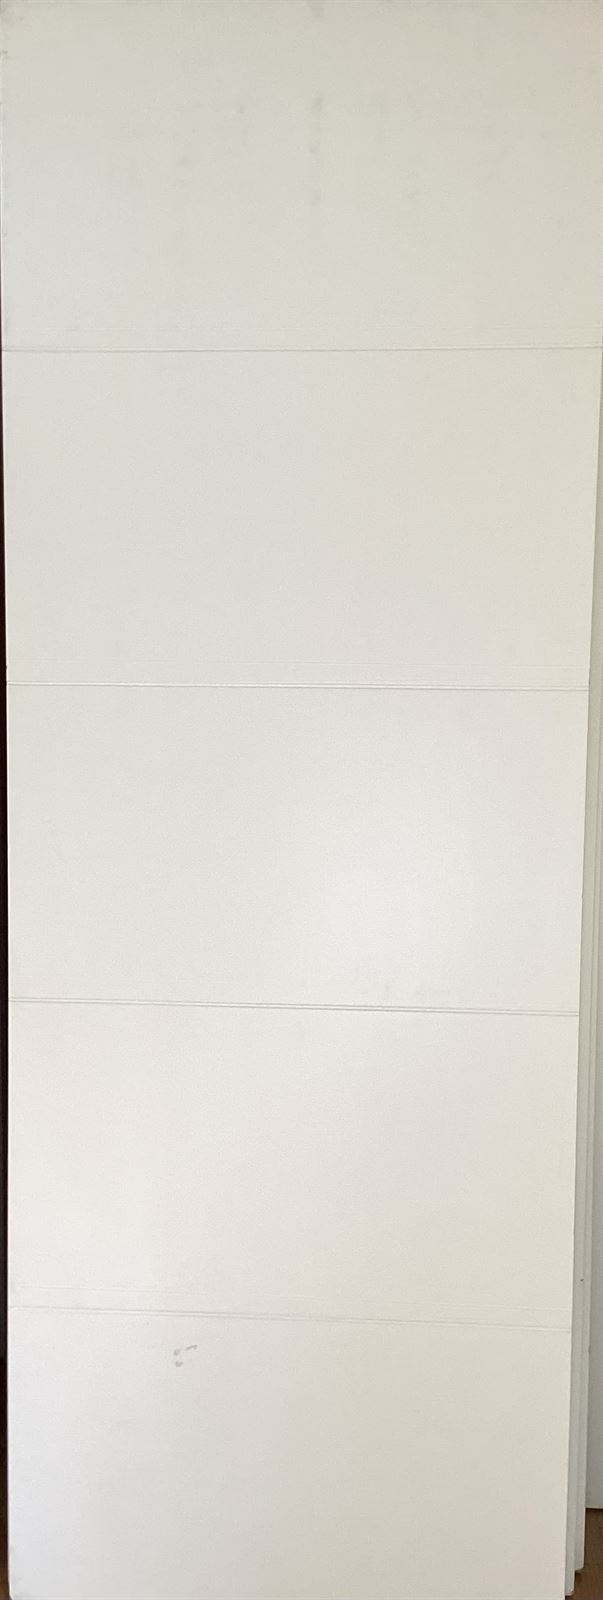 Puerta lacada blanca modelo 3 - Imagen 1